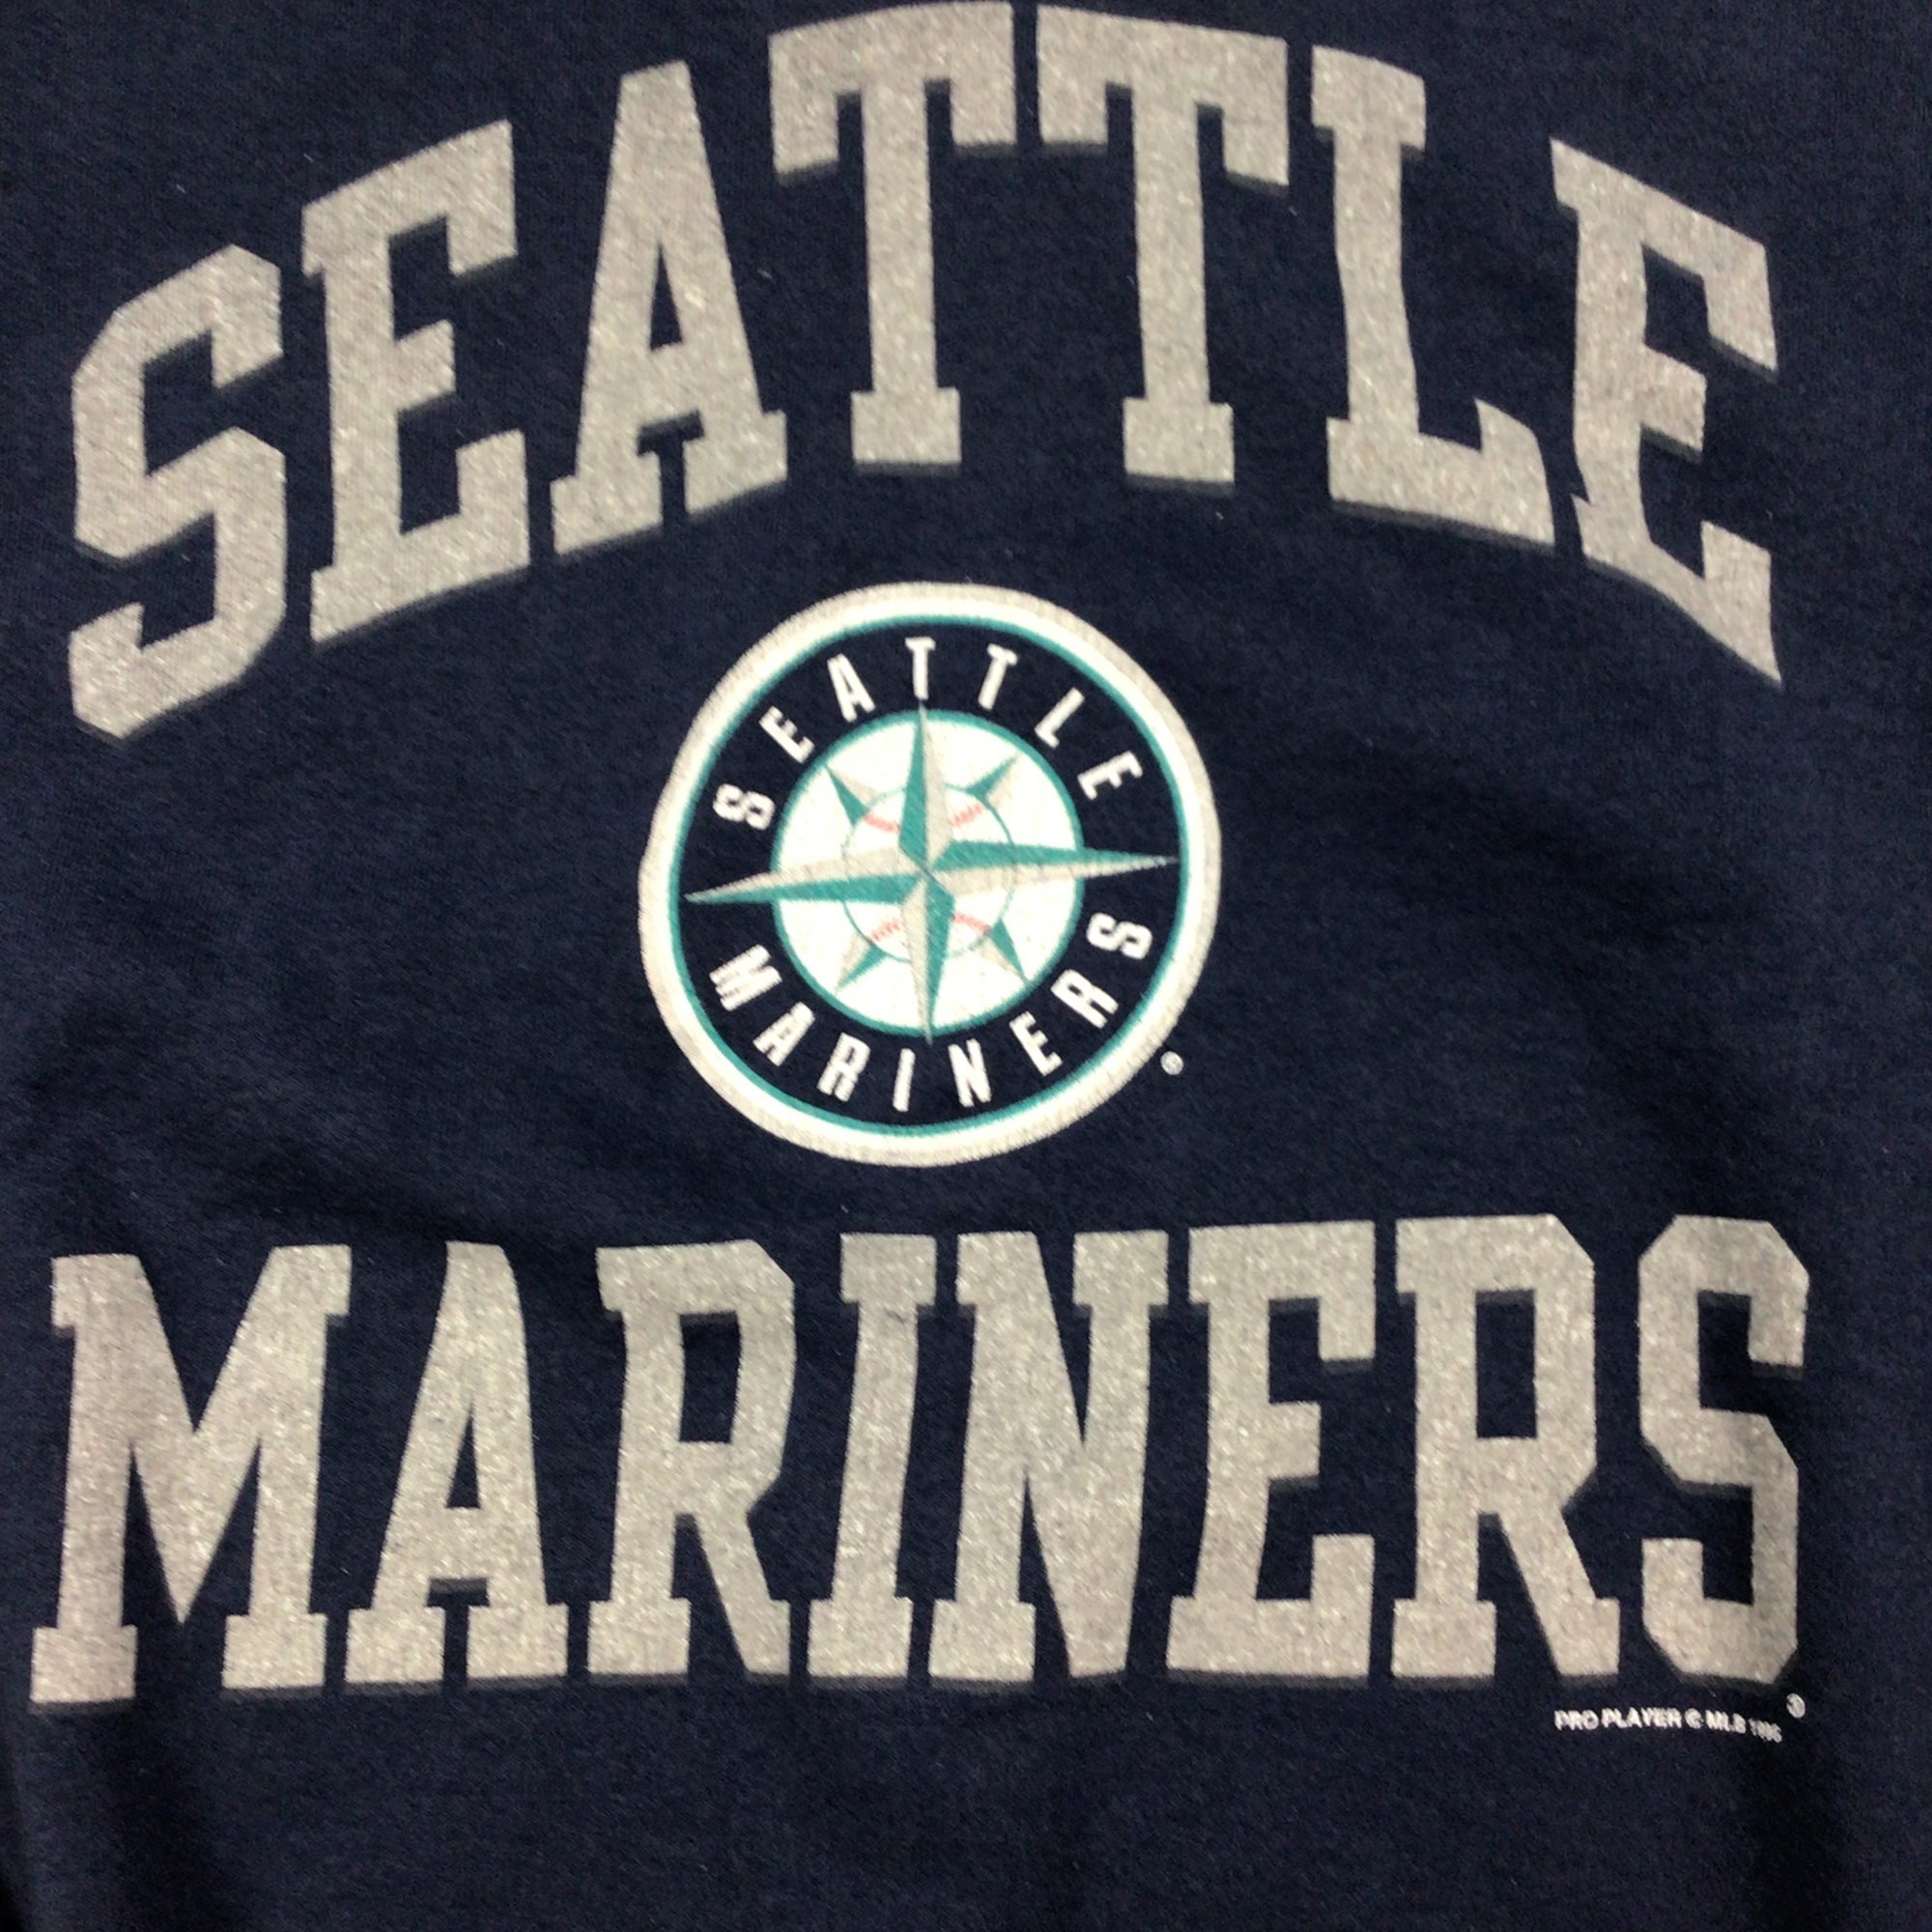 Seattle Mariners Vintage MLB Crewneck Sweatshirt